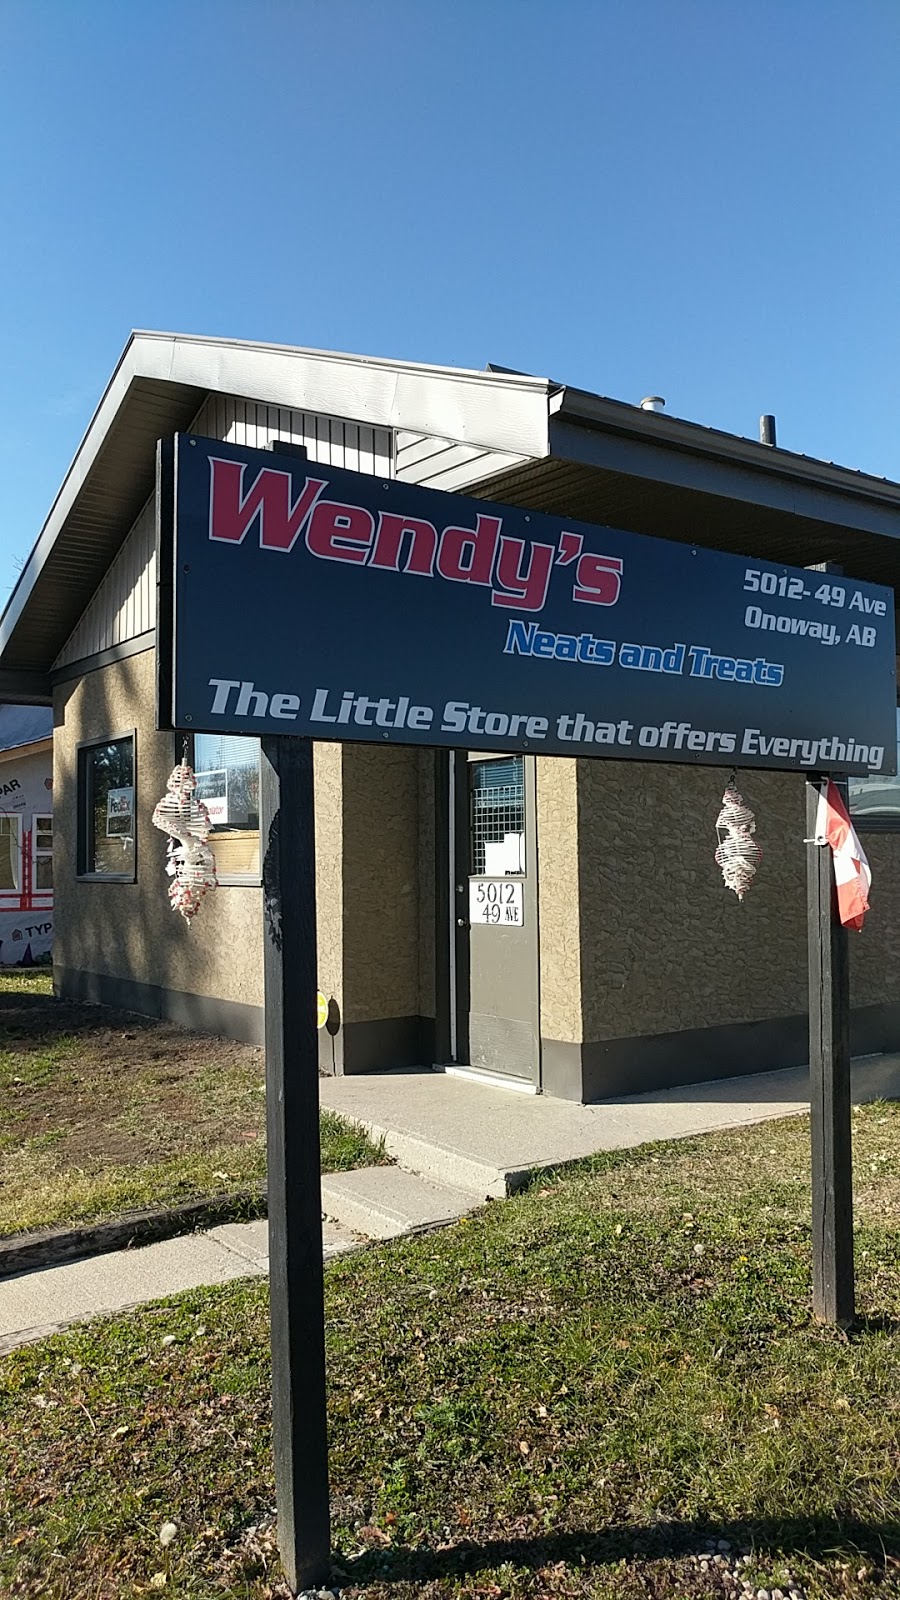 Wendys Neats And Treats (Purolator) | store | 5012 49 Ave, Onoway, AB T0E 1V0, Canada | 7809670351 OR +1 780-967-0351